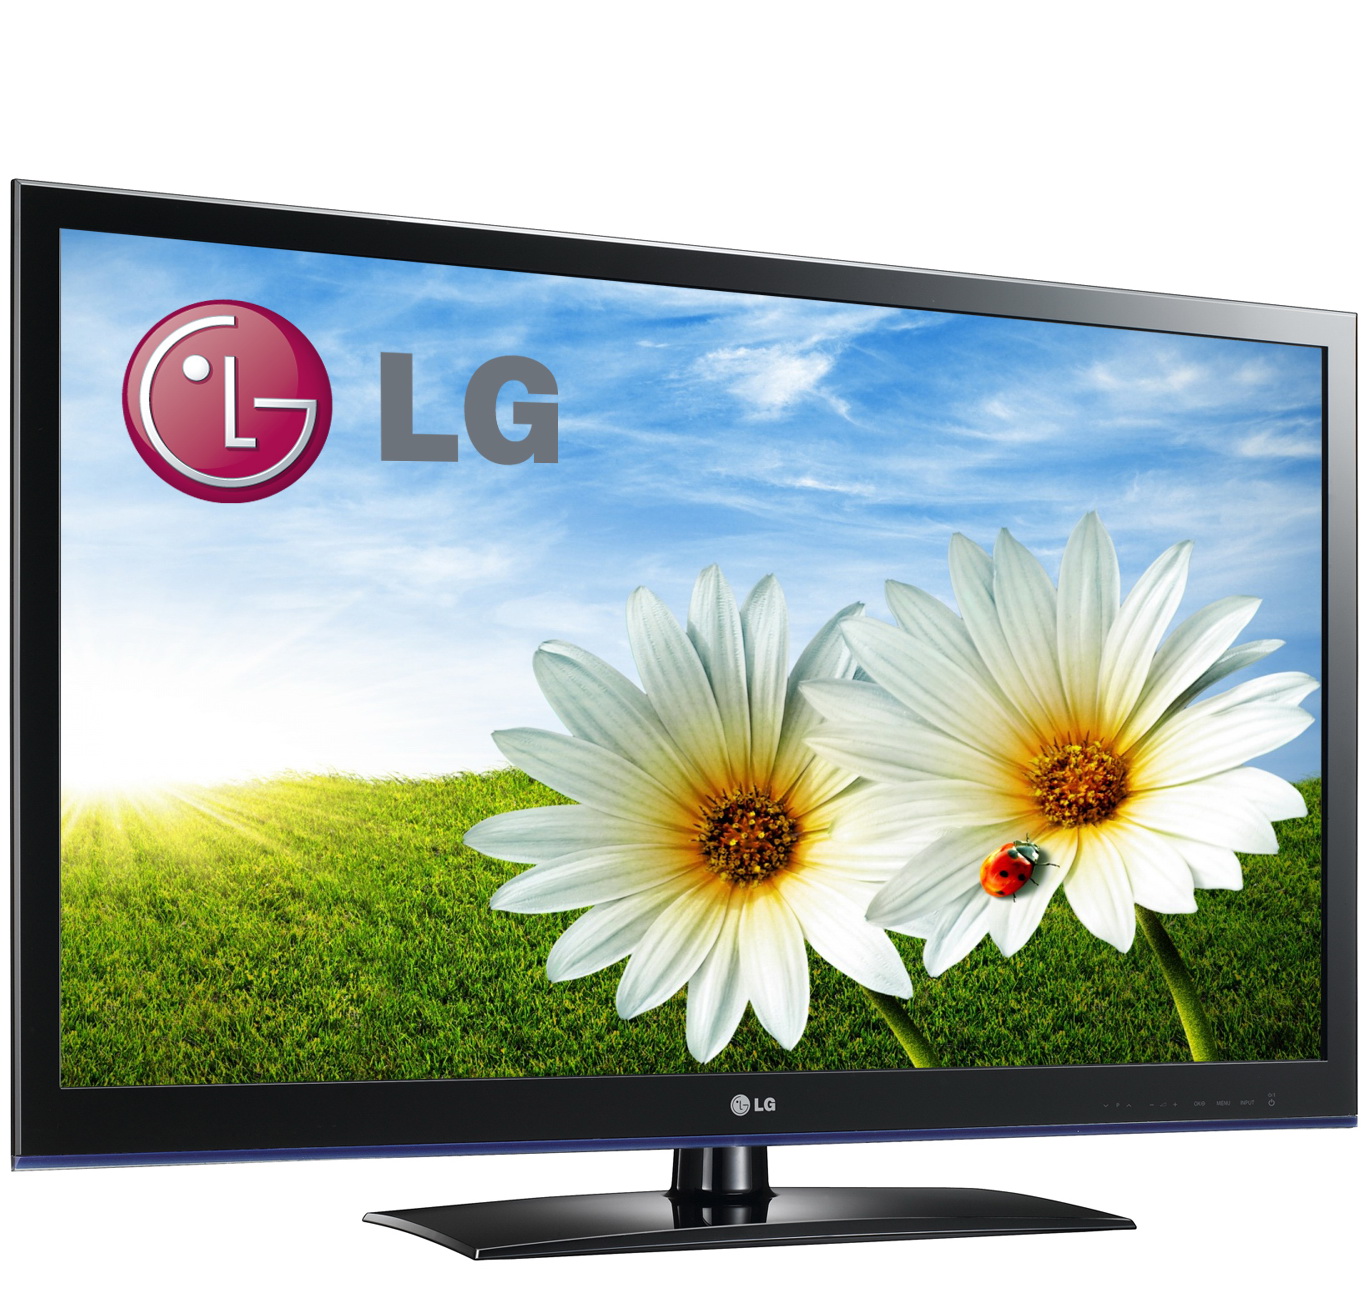 Поддержка lg телевизоров. Телевизор LG 32lf2510. LG LG 32lw4500. LG 32 led Television. LG led LCD TV 43uq75006lf.